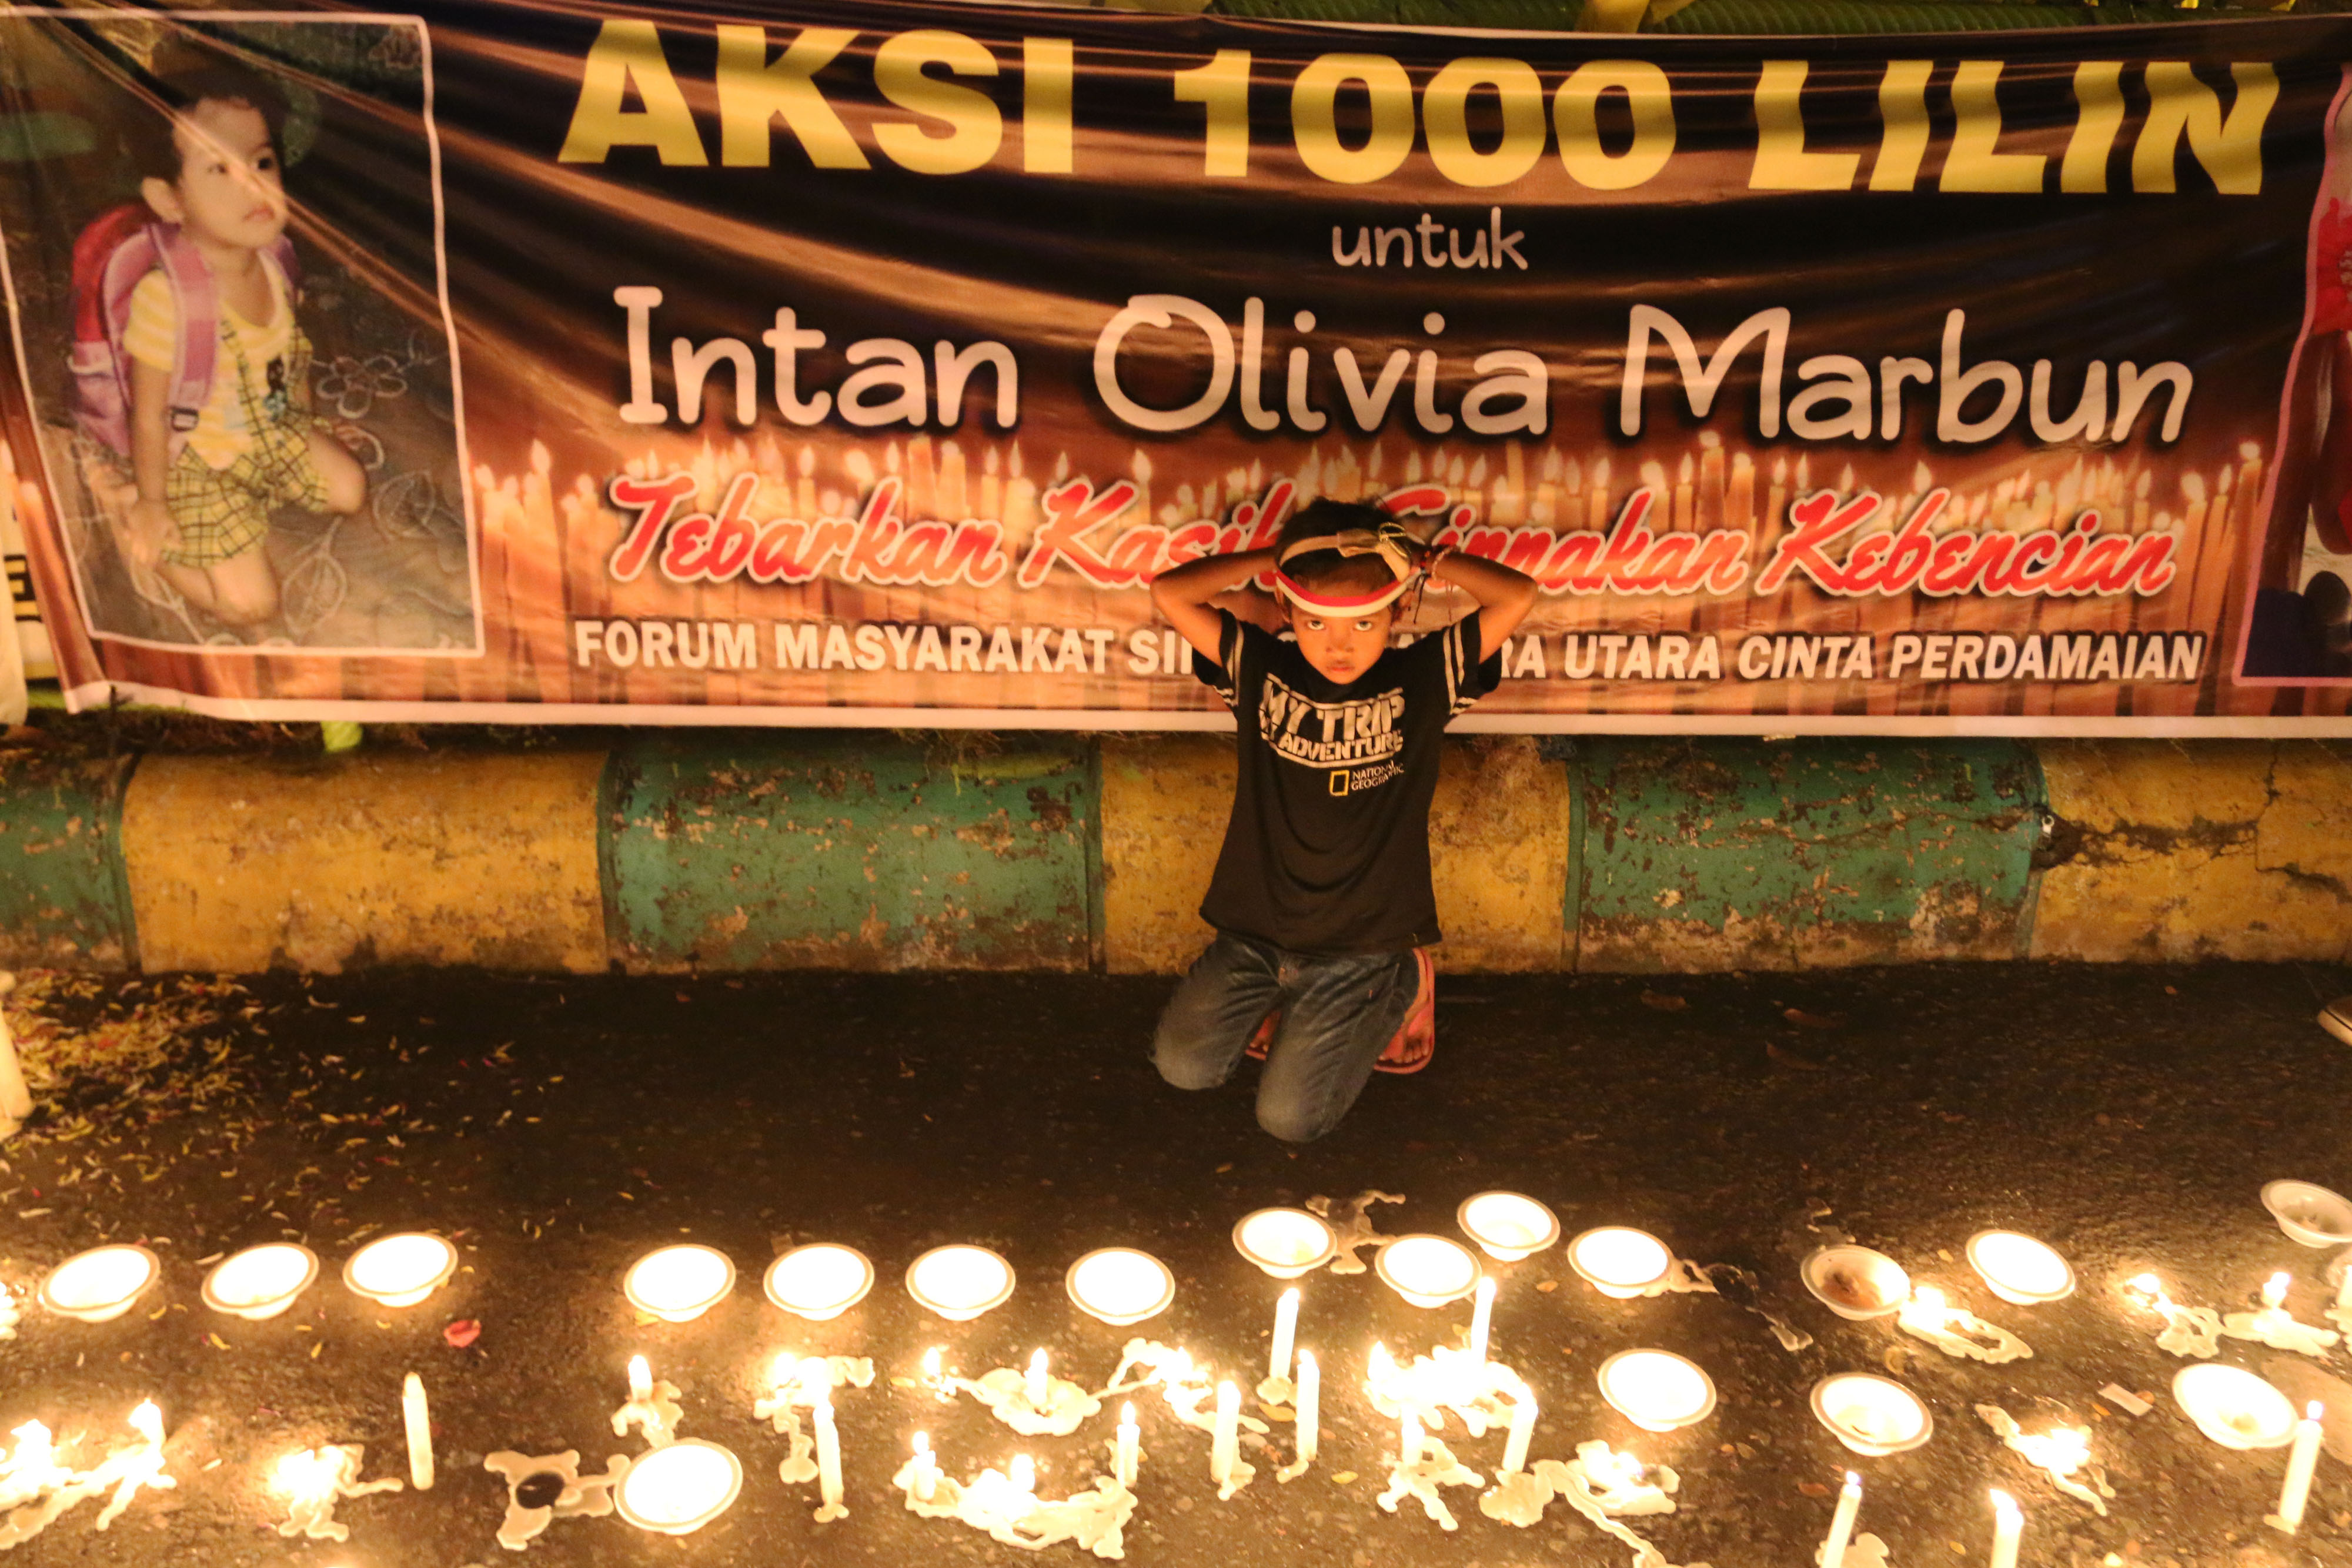 Aksi 1.000 lilin untuk Intan Olivia Marbun yang digelar di titik Nol Kota Medan, Sumatera Utara, pada 18 November 2016. Foto oleh Irsan Mulyadi/Antara 